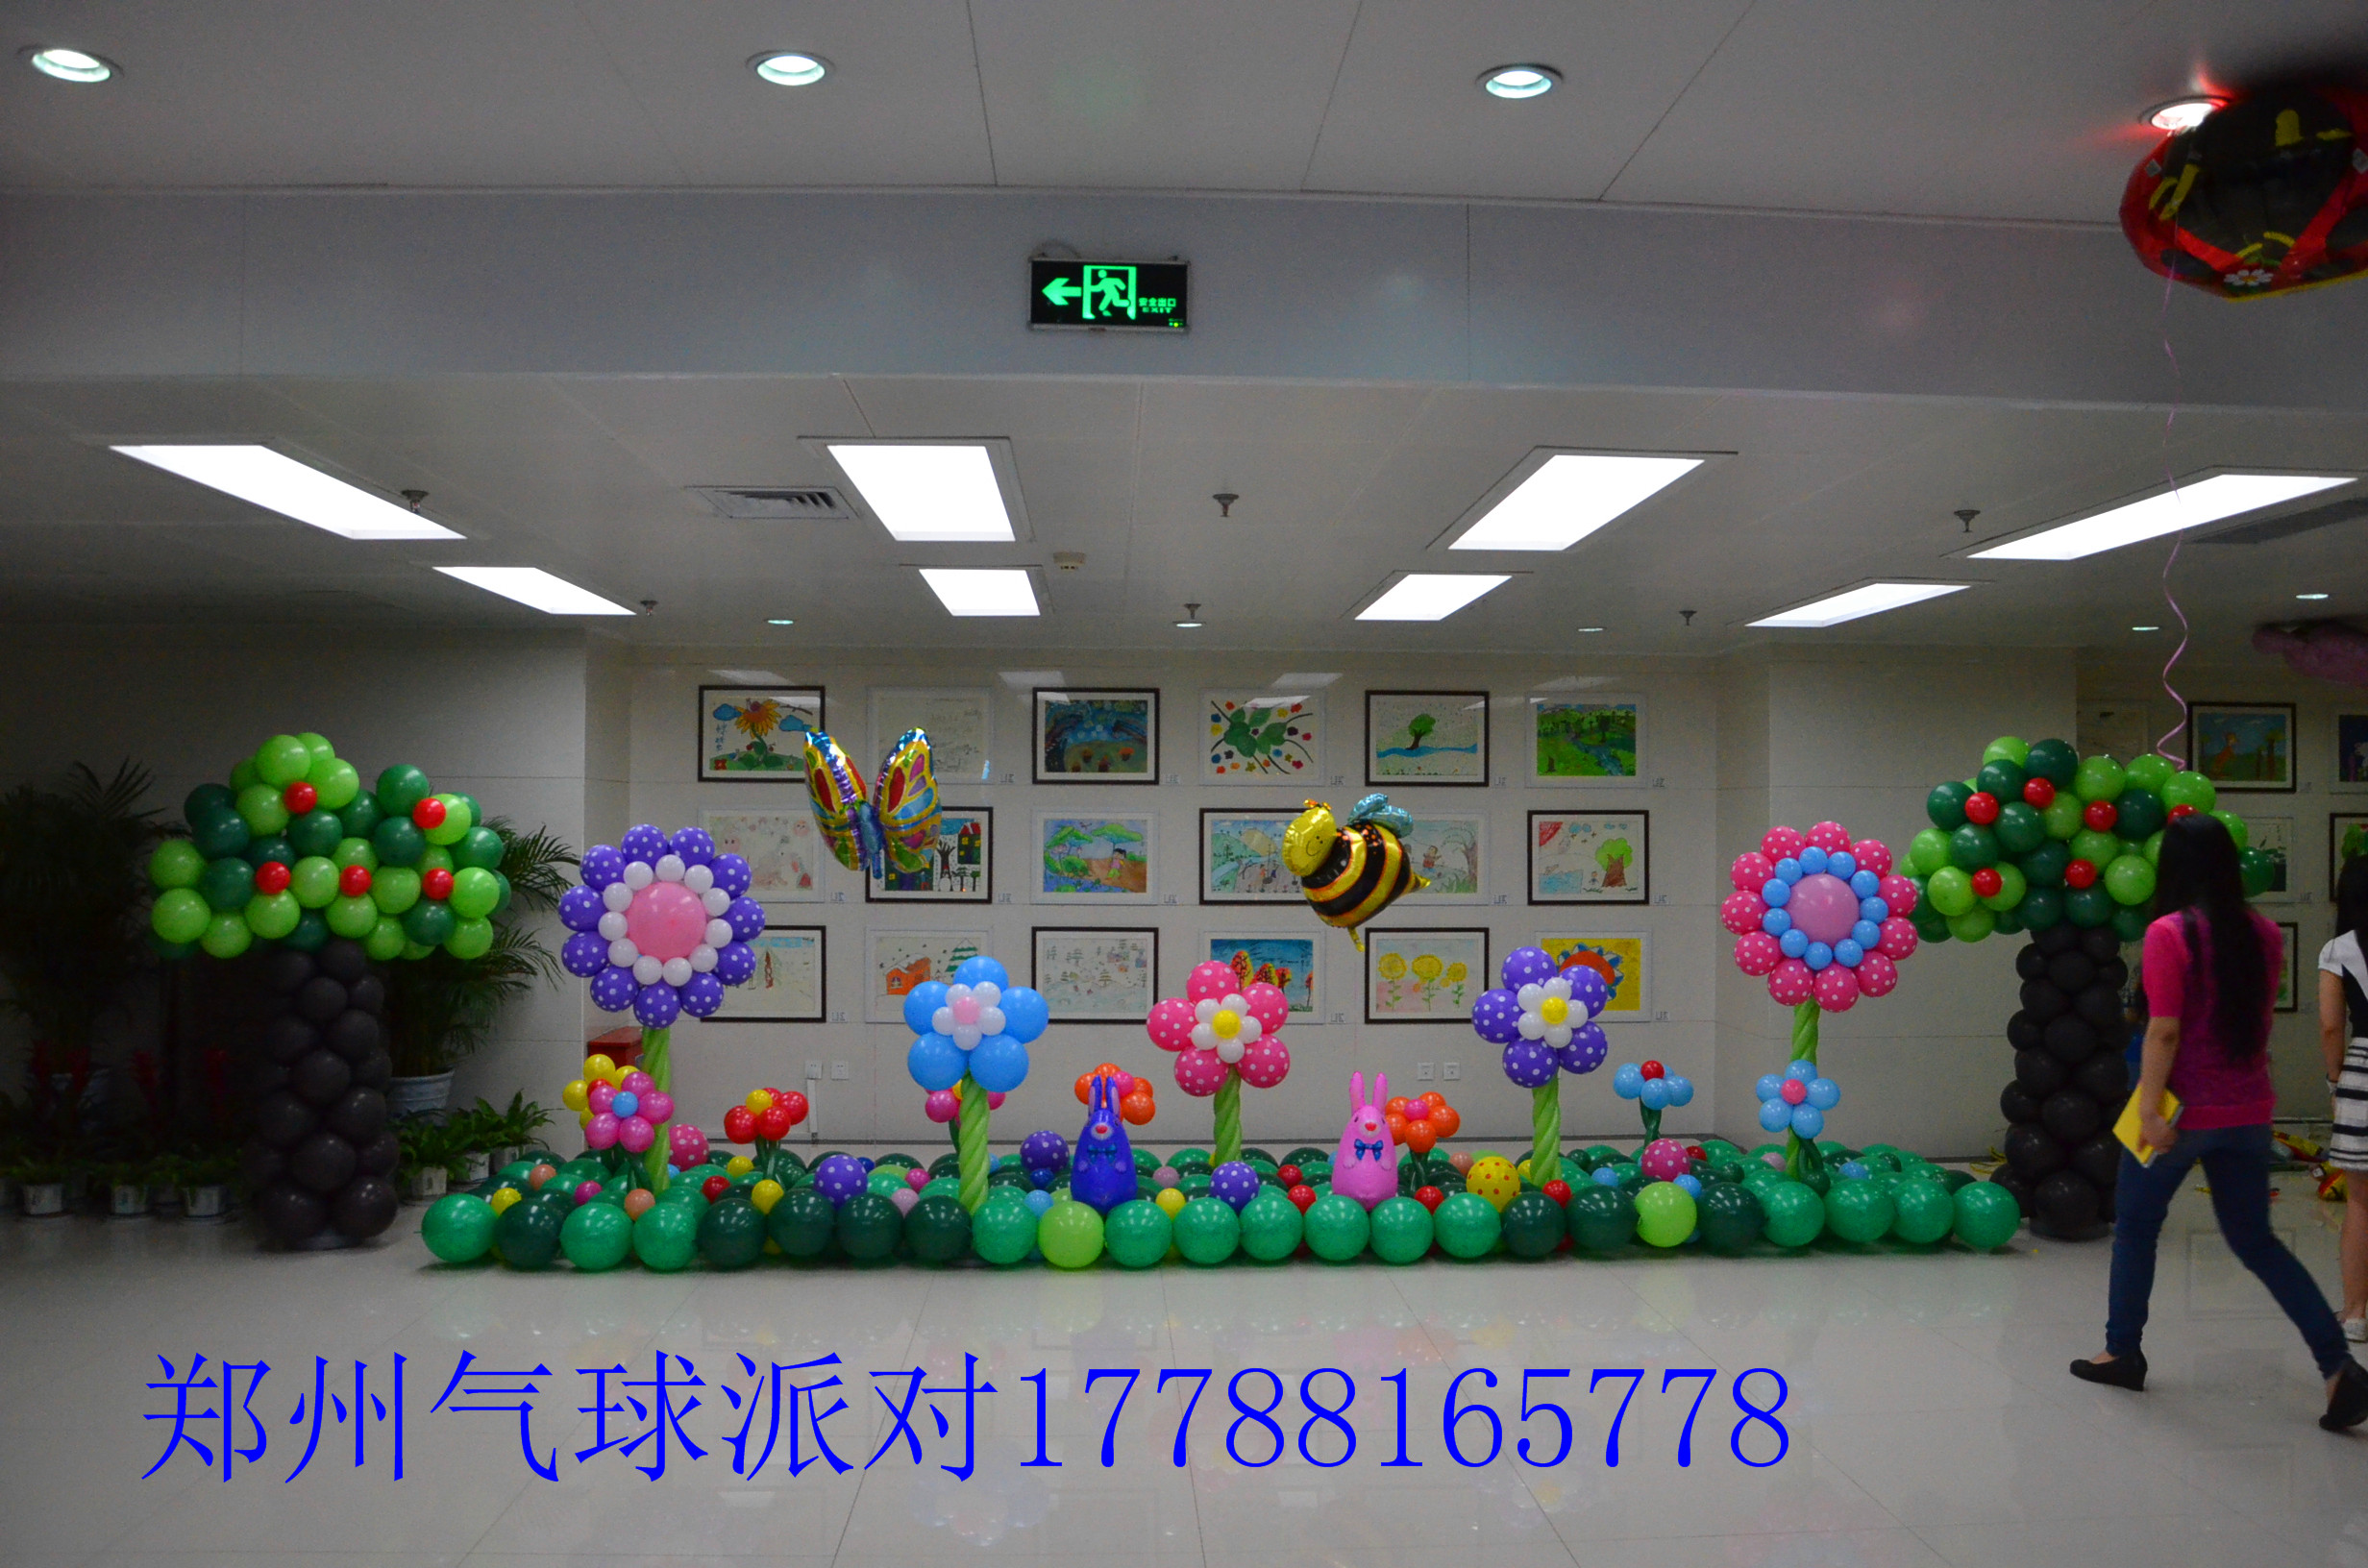 郑州空飘气球派送宝宝宴气球策划商场活动气球策划布置幼儿园活动气球策划布置气球婚礼策划布置生日派对气球策划布置图片